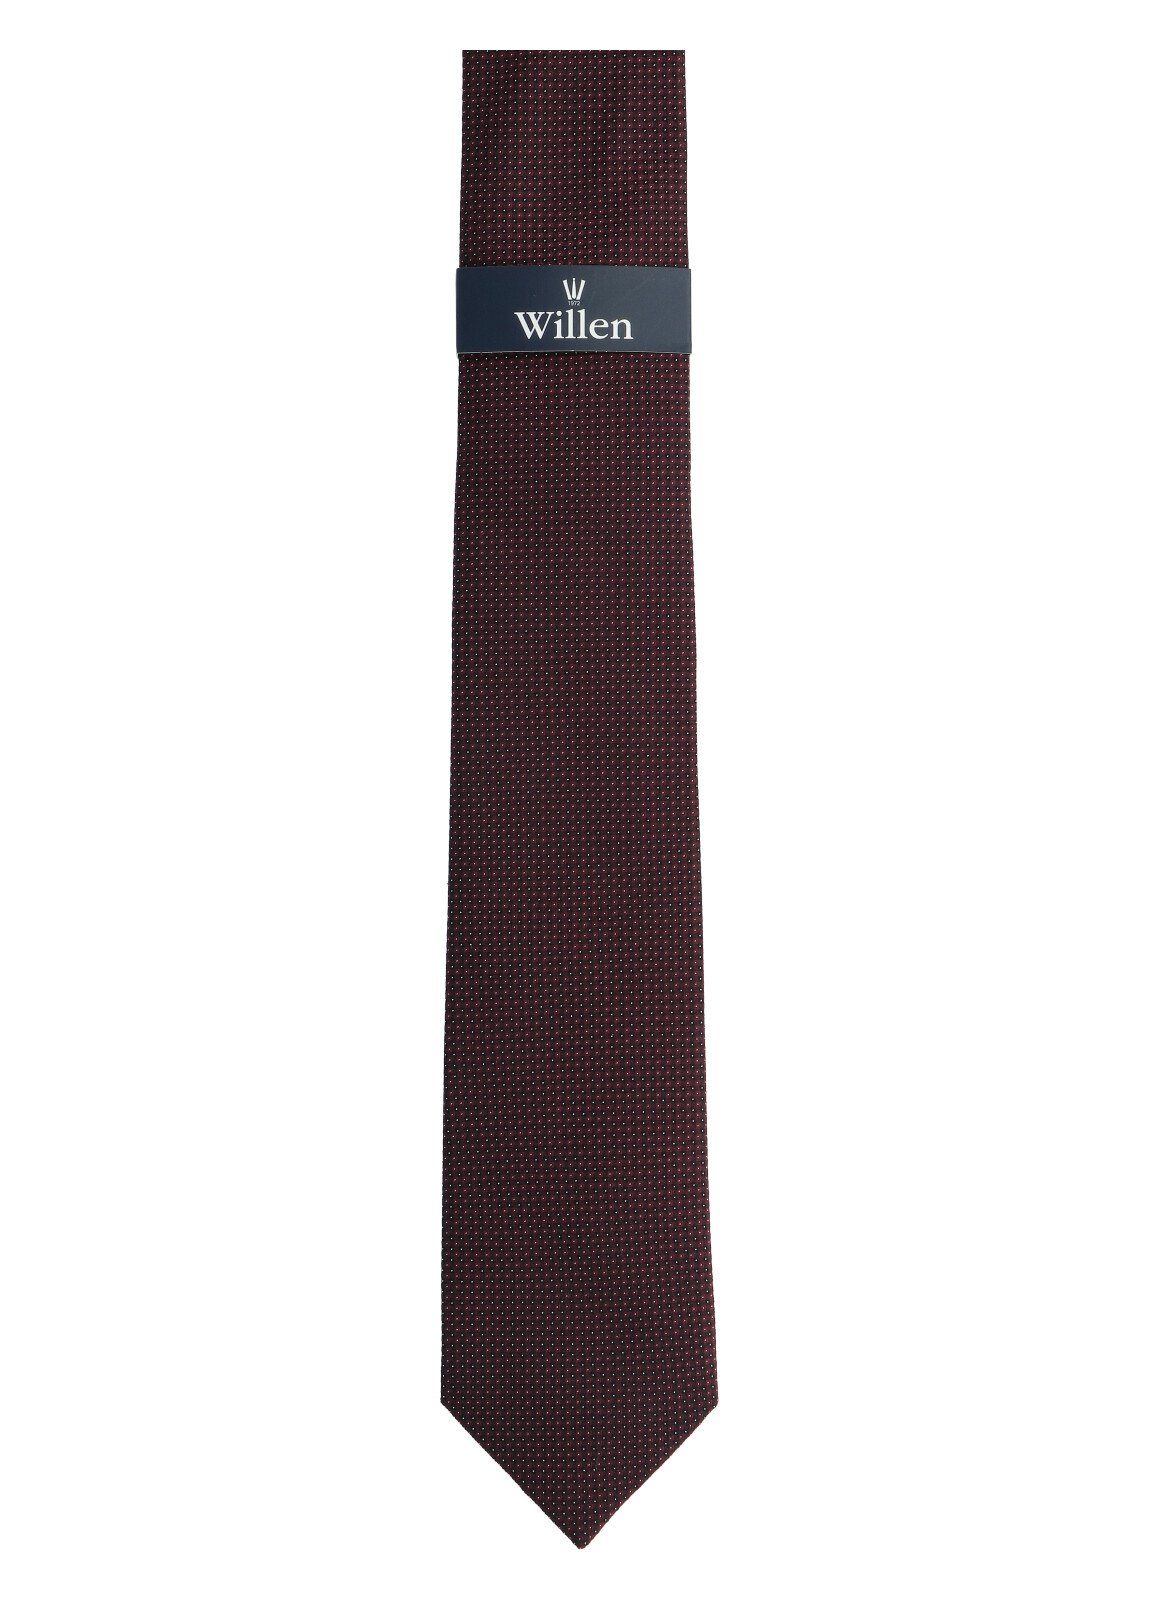 WILLEN Krawatte Willen braun Krawatte